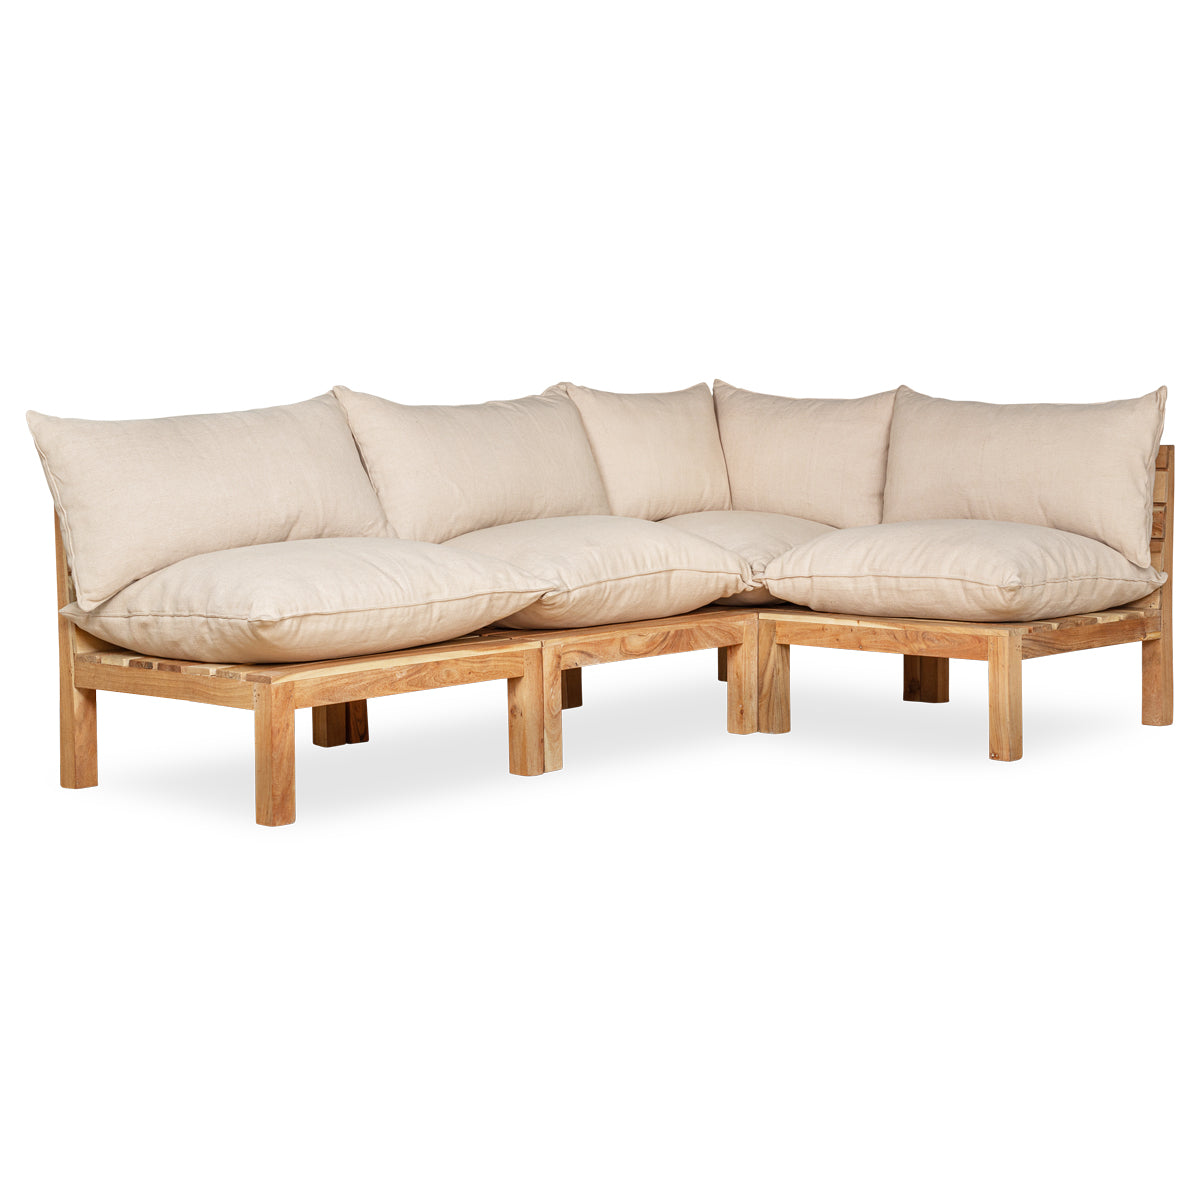 Nkuku Anbarasi Acacia Modular Sofa - Natural - Set